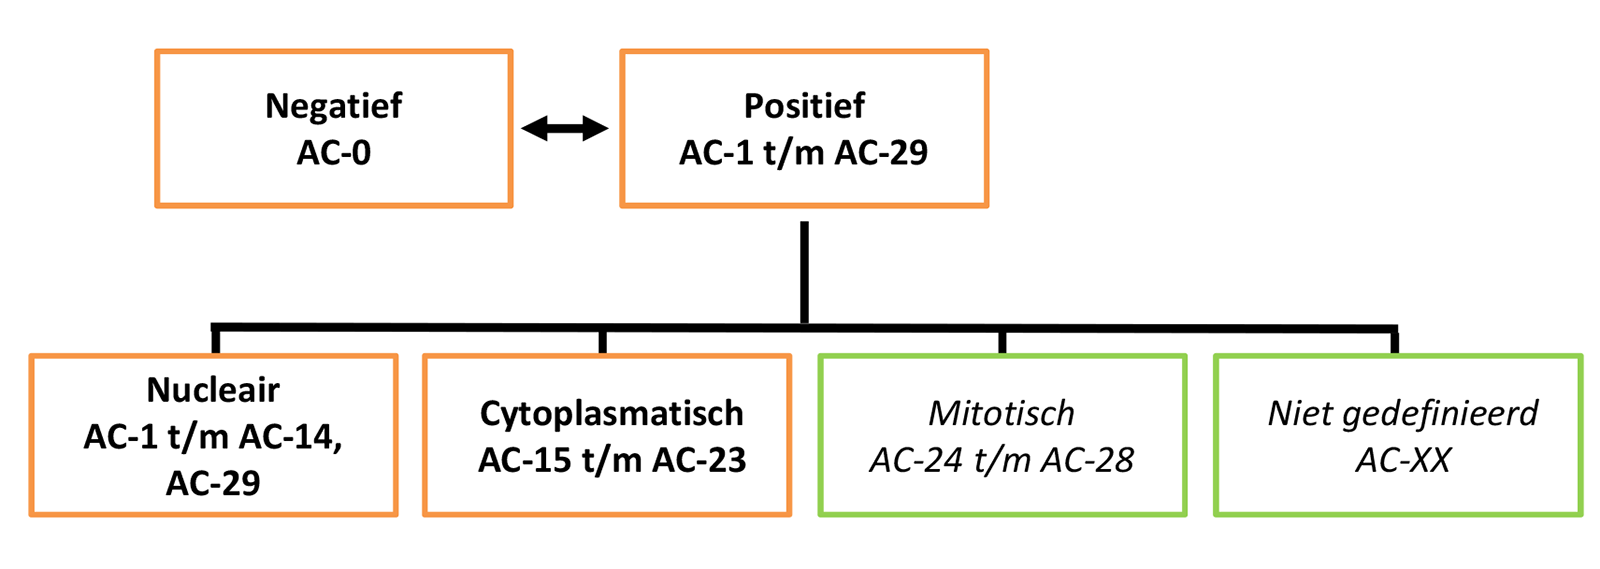 Stroomdiagram: Eerste niveau van de boomstructuur voor de nomenclatuur en classificatie voor IIF-patronen op HEp-2-celpreparaten. 